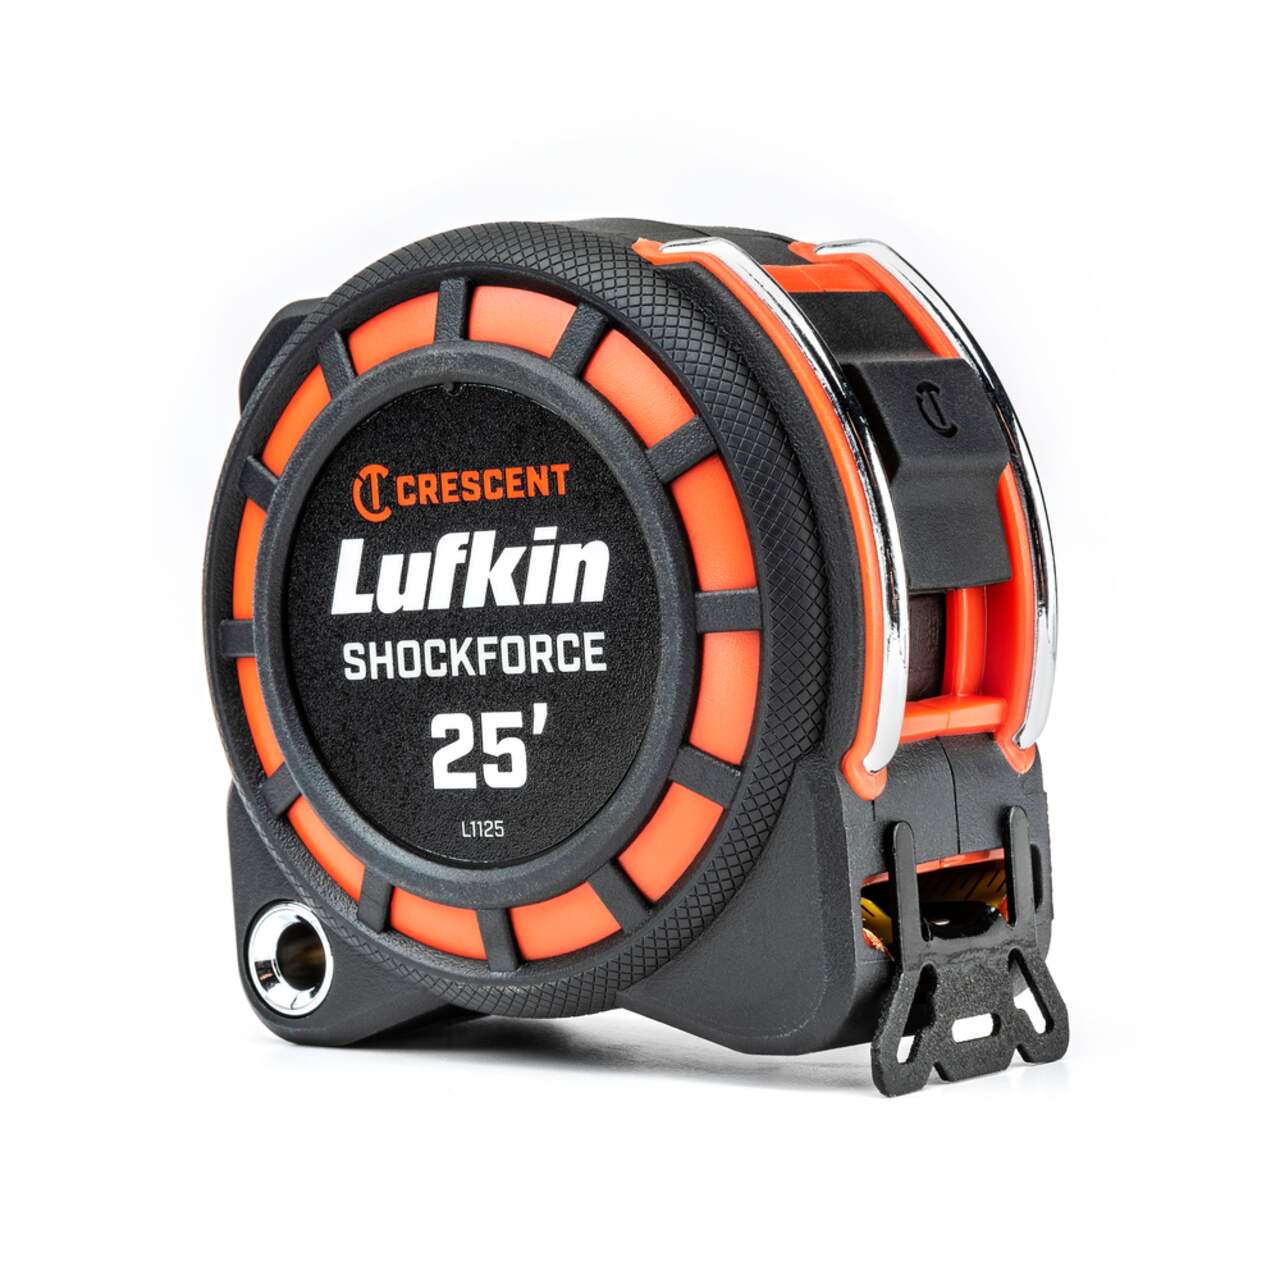 Lufkin L1125 Crescent Shockforce Traditional Tape Measure, 25-ft